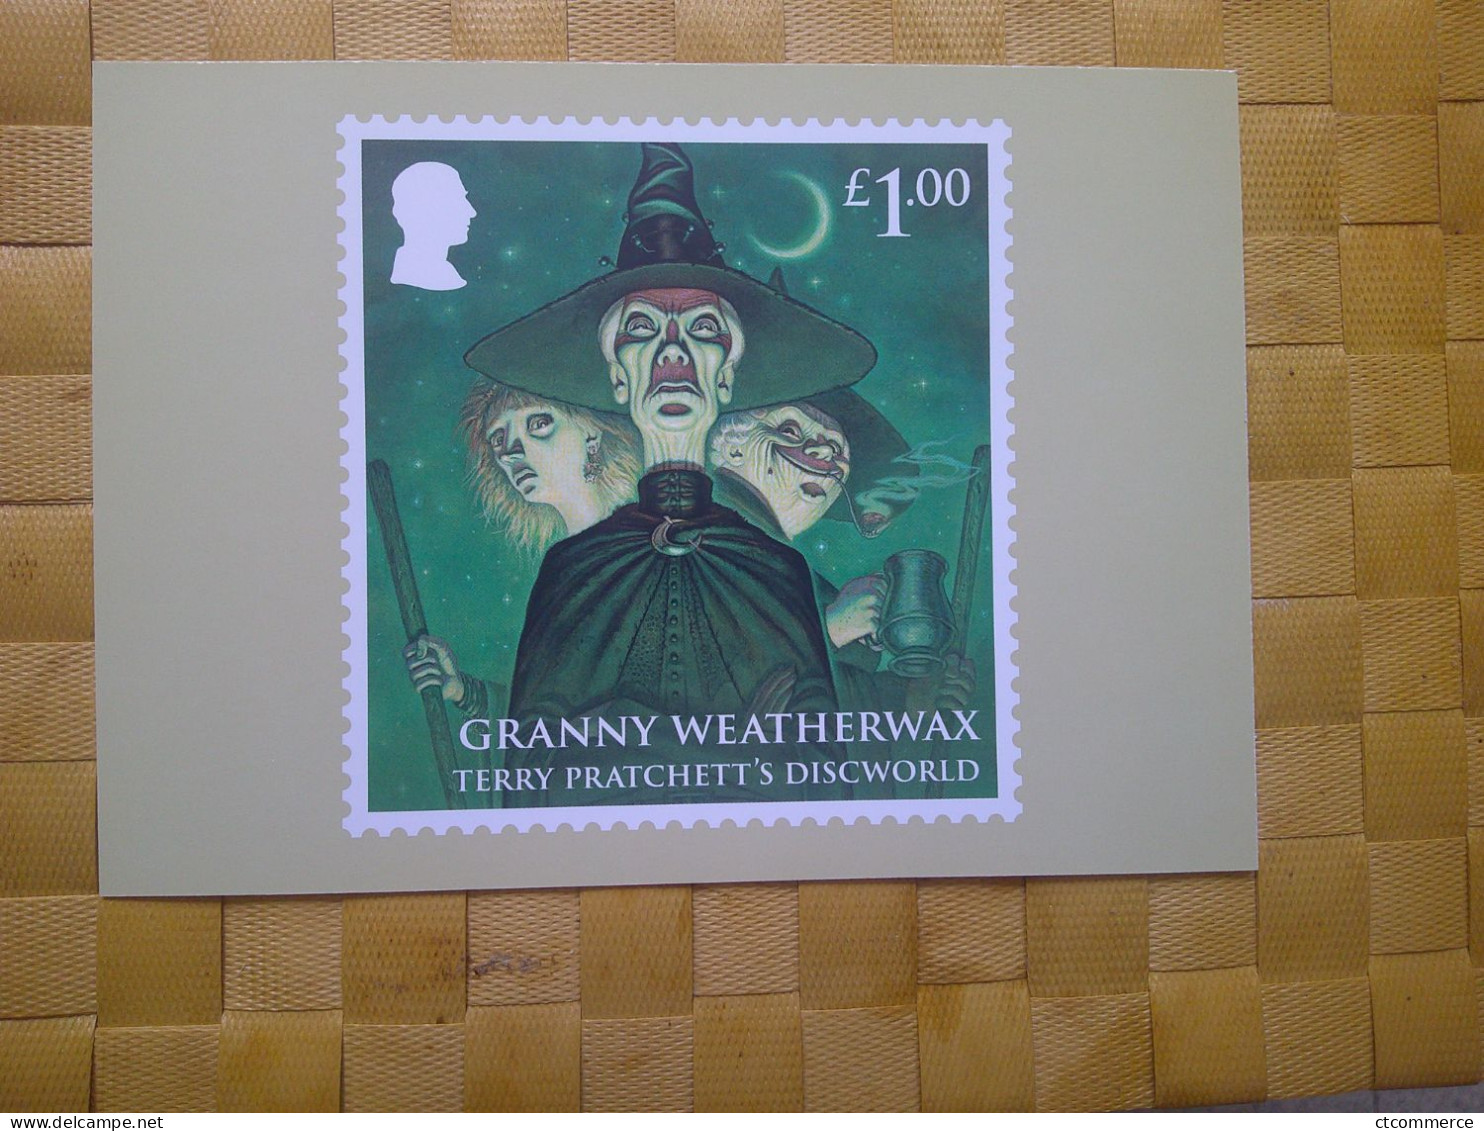 8 cartes postales PHQ représentaion de timbre, Terry Pratchett's Discworld